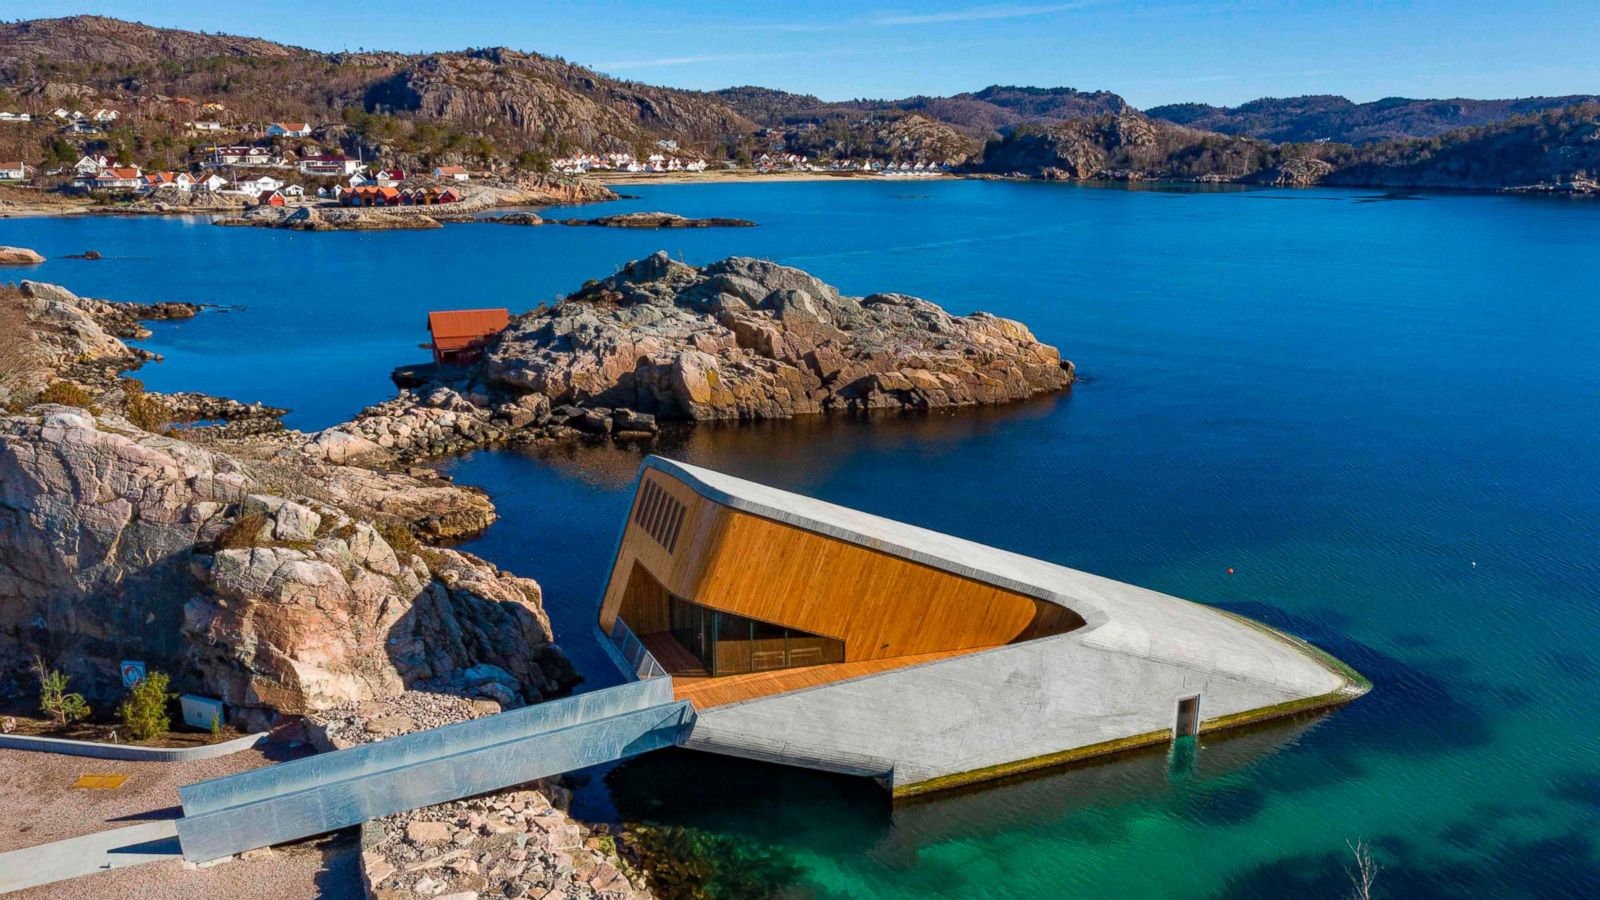 Underwater Restaurant – A Global Architectural Attraction